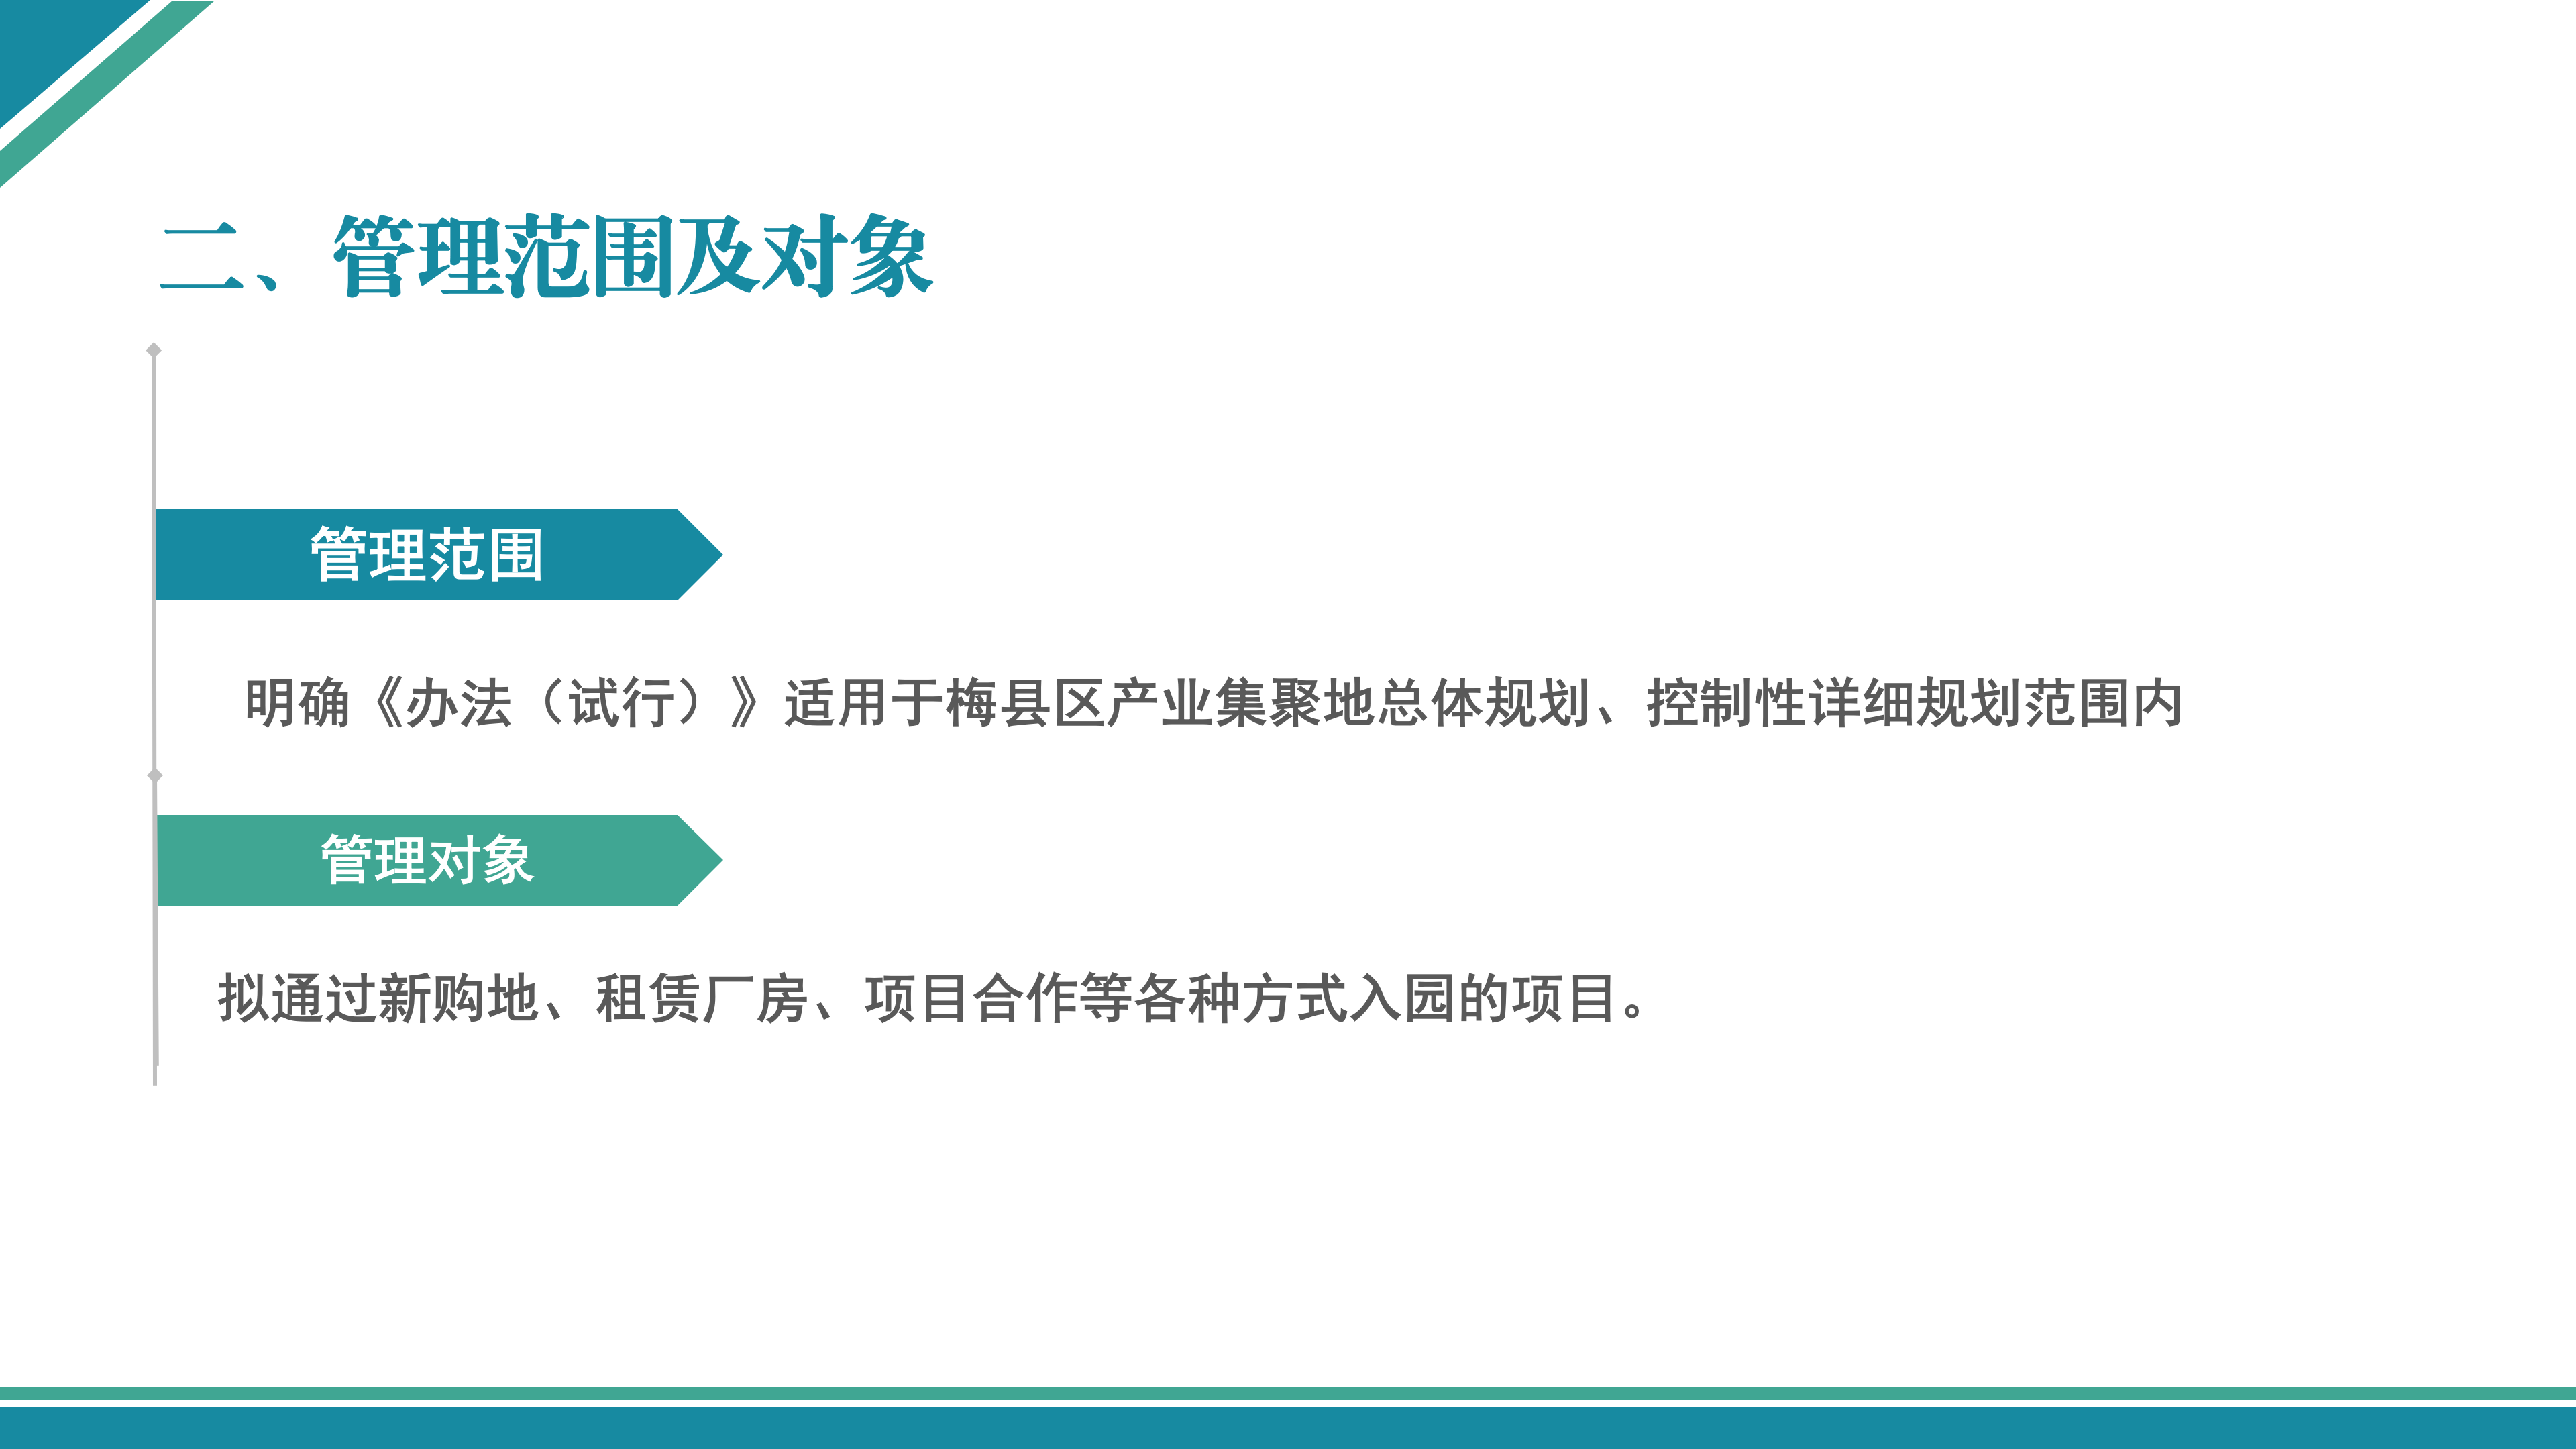 梅县区产业集聚地产业项目准入管理办法（试行）政策解读_10.png